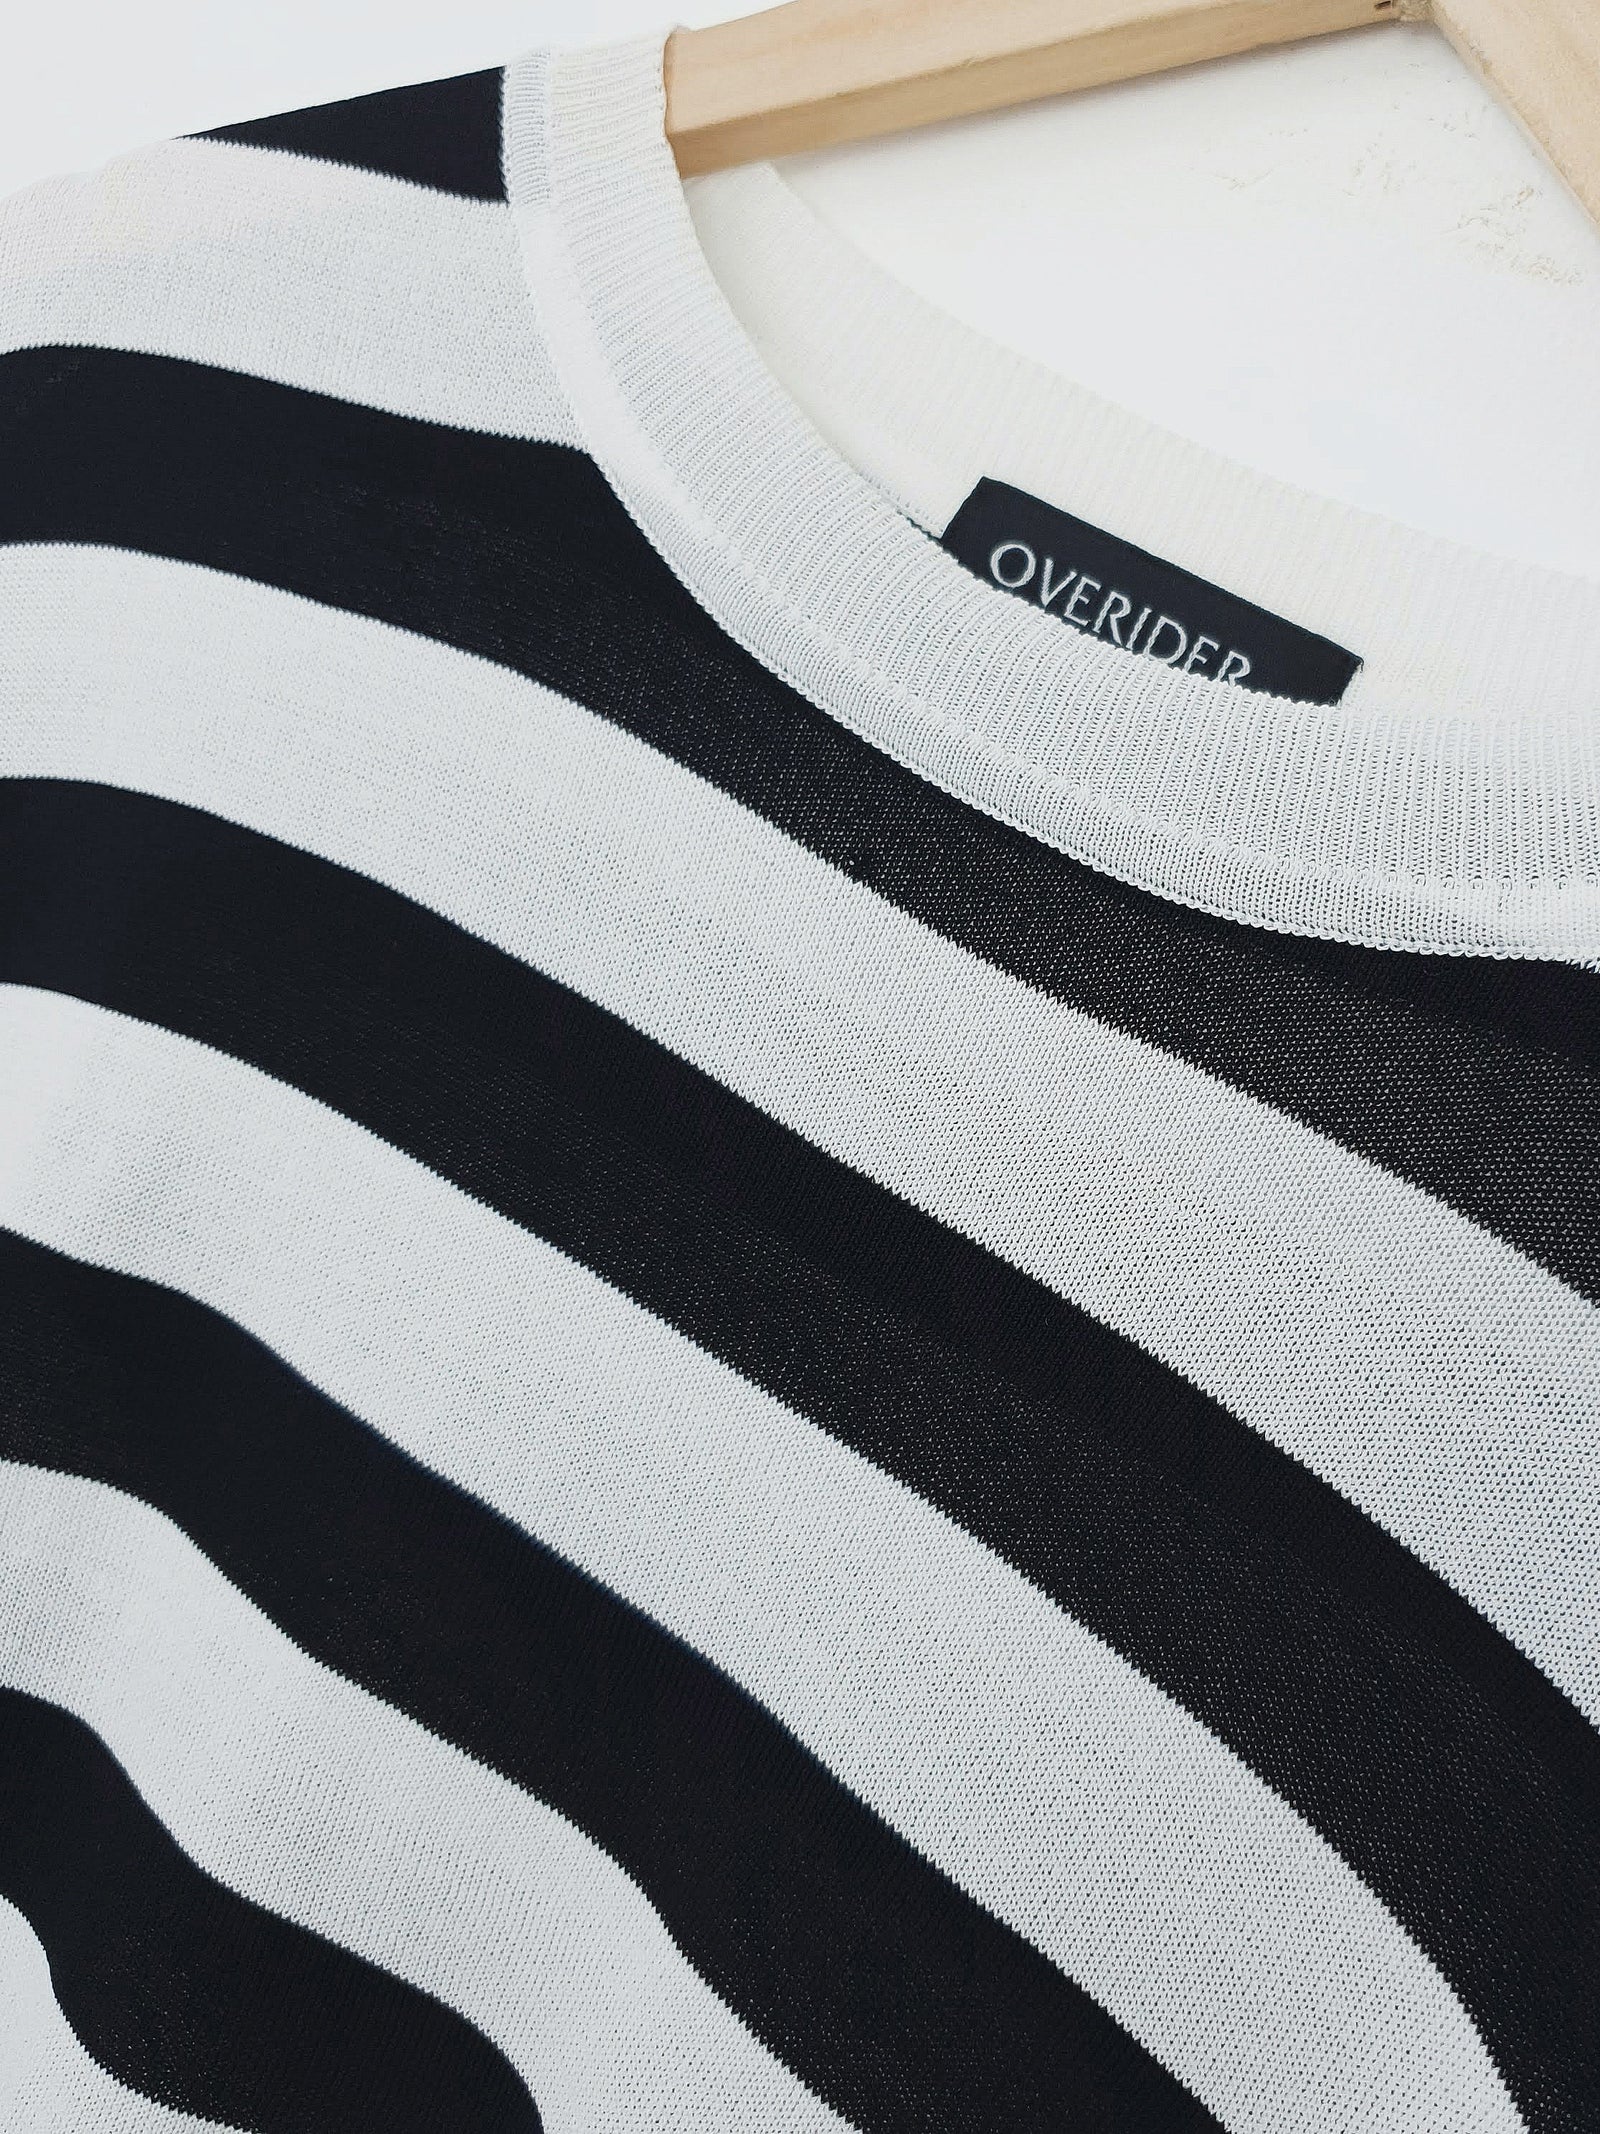 DITZA | Striped Sweater Top | Black